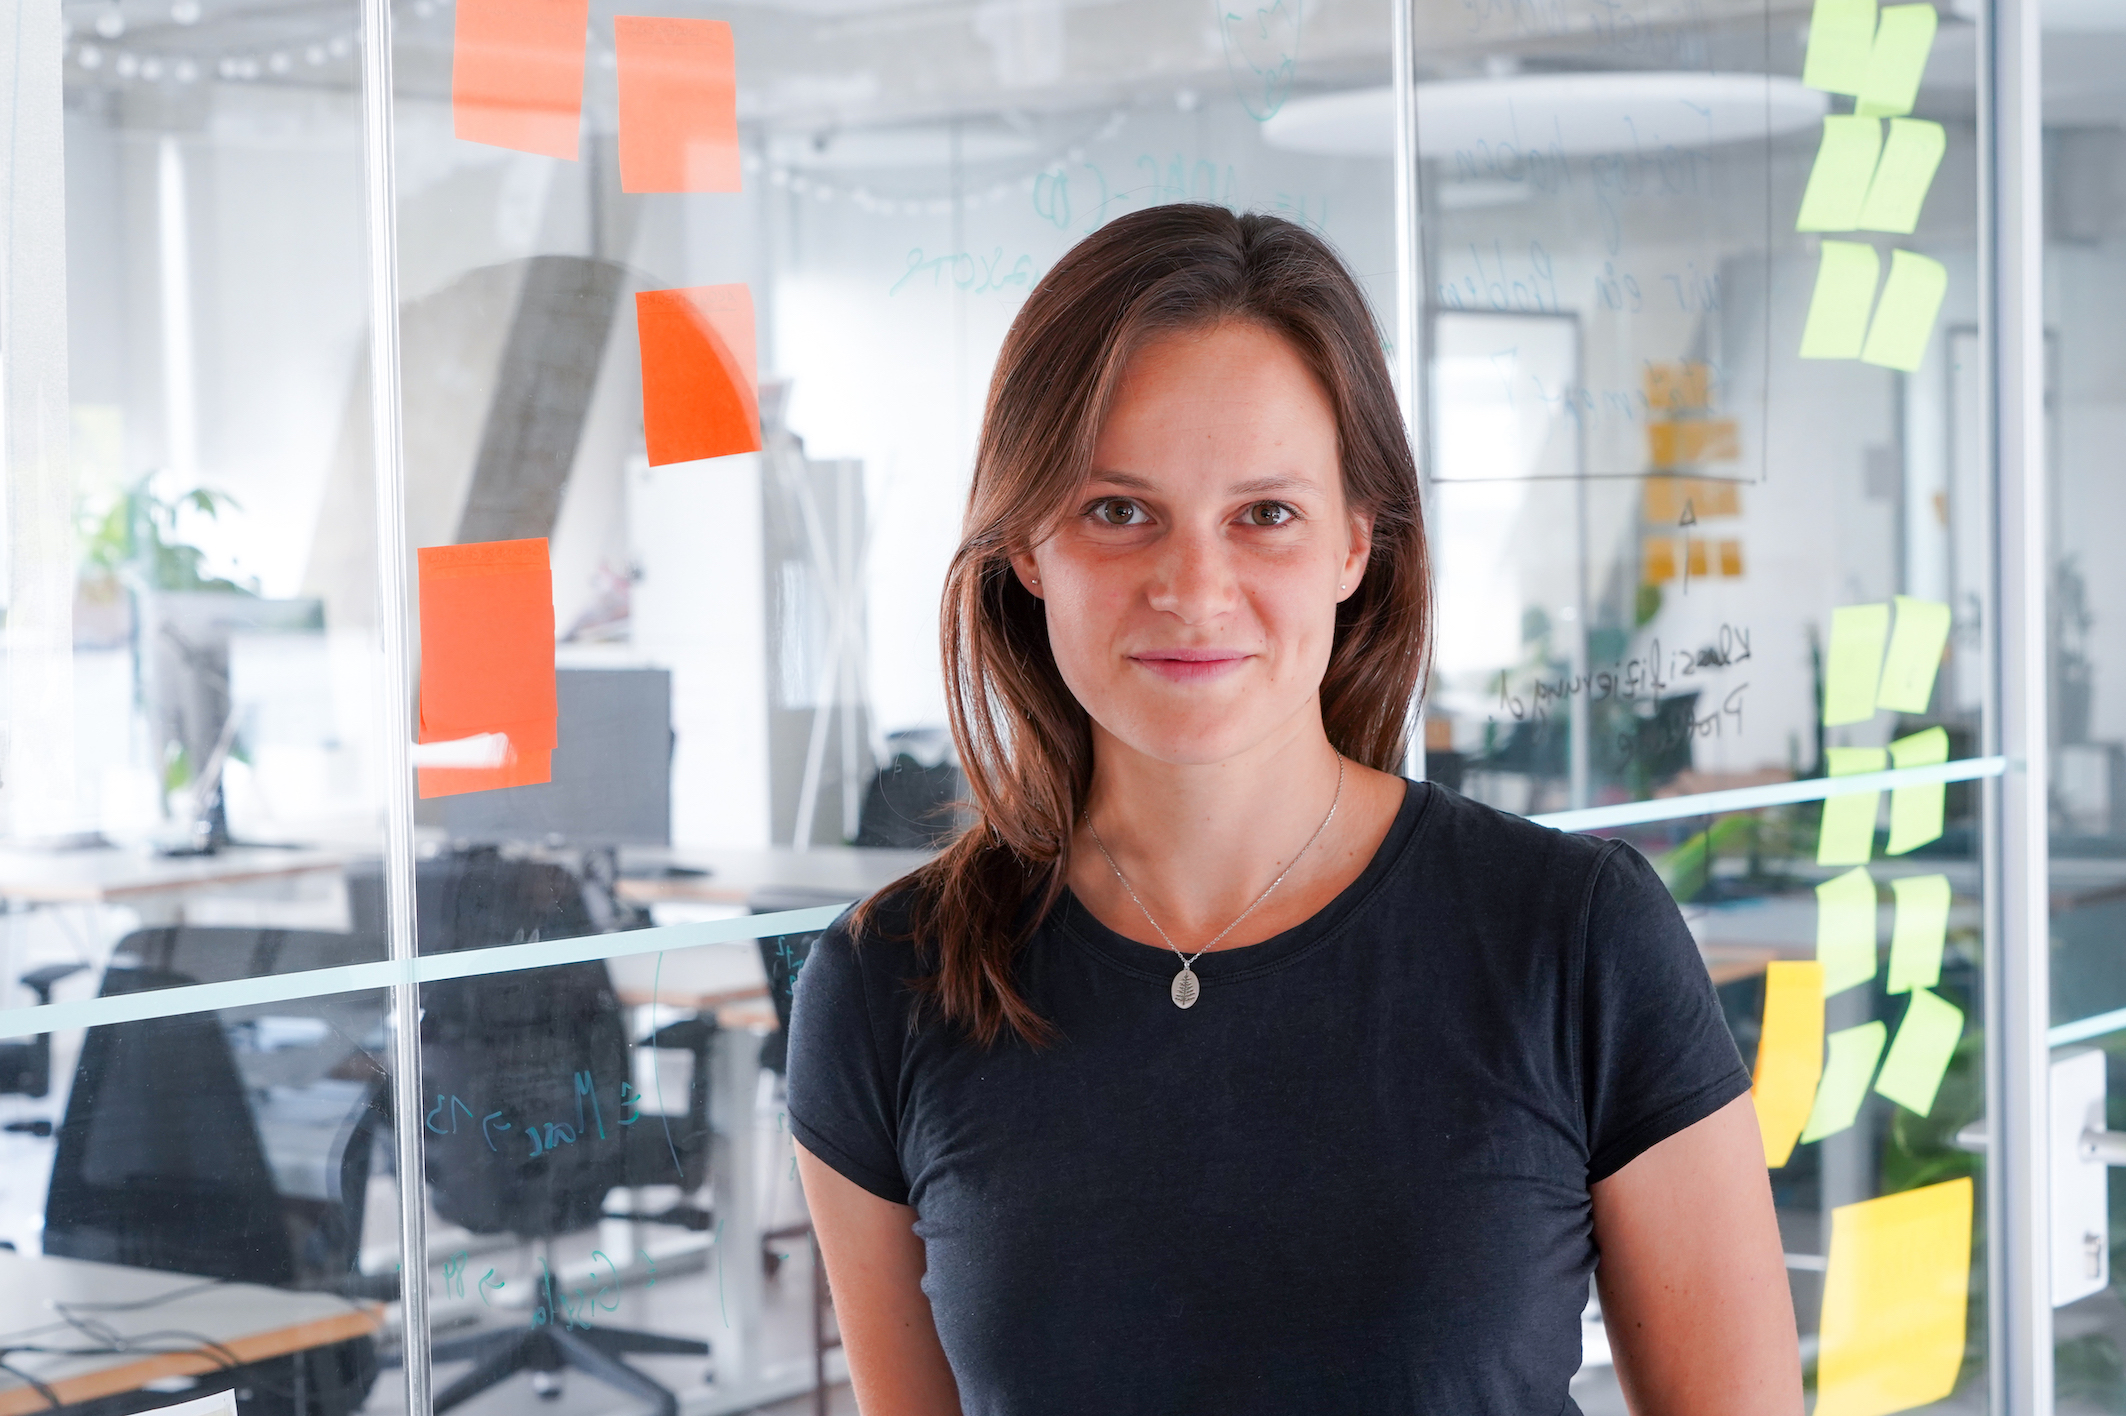 Katja Anokhina, Product Managerin, steht vor einer Glaswand in einem Büroraum, die Glaswand ist mit bunten Notizzetteln versehen.